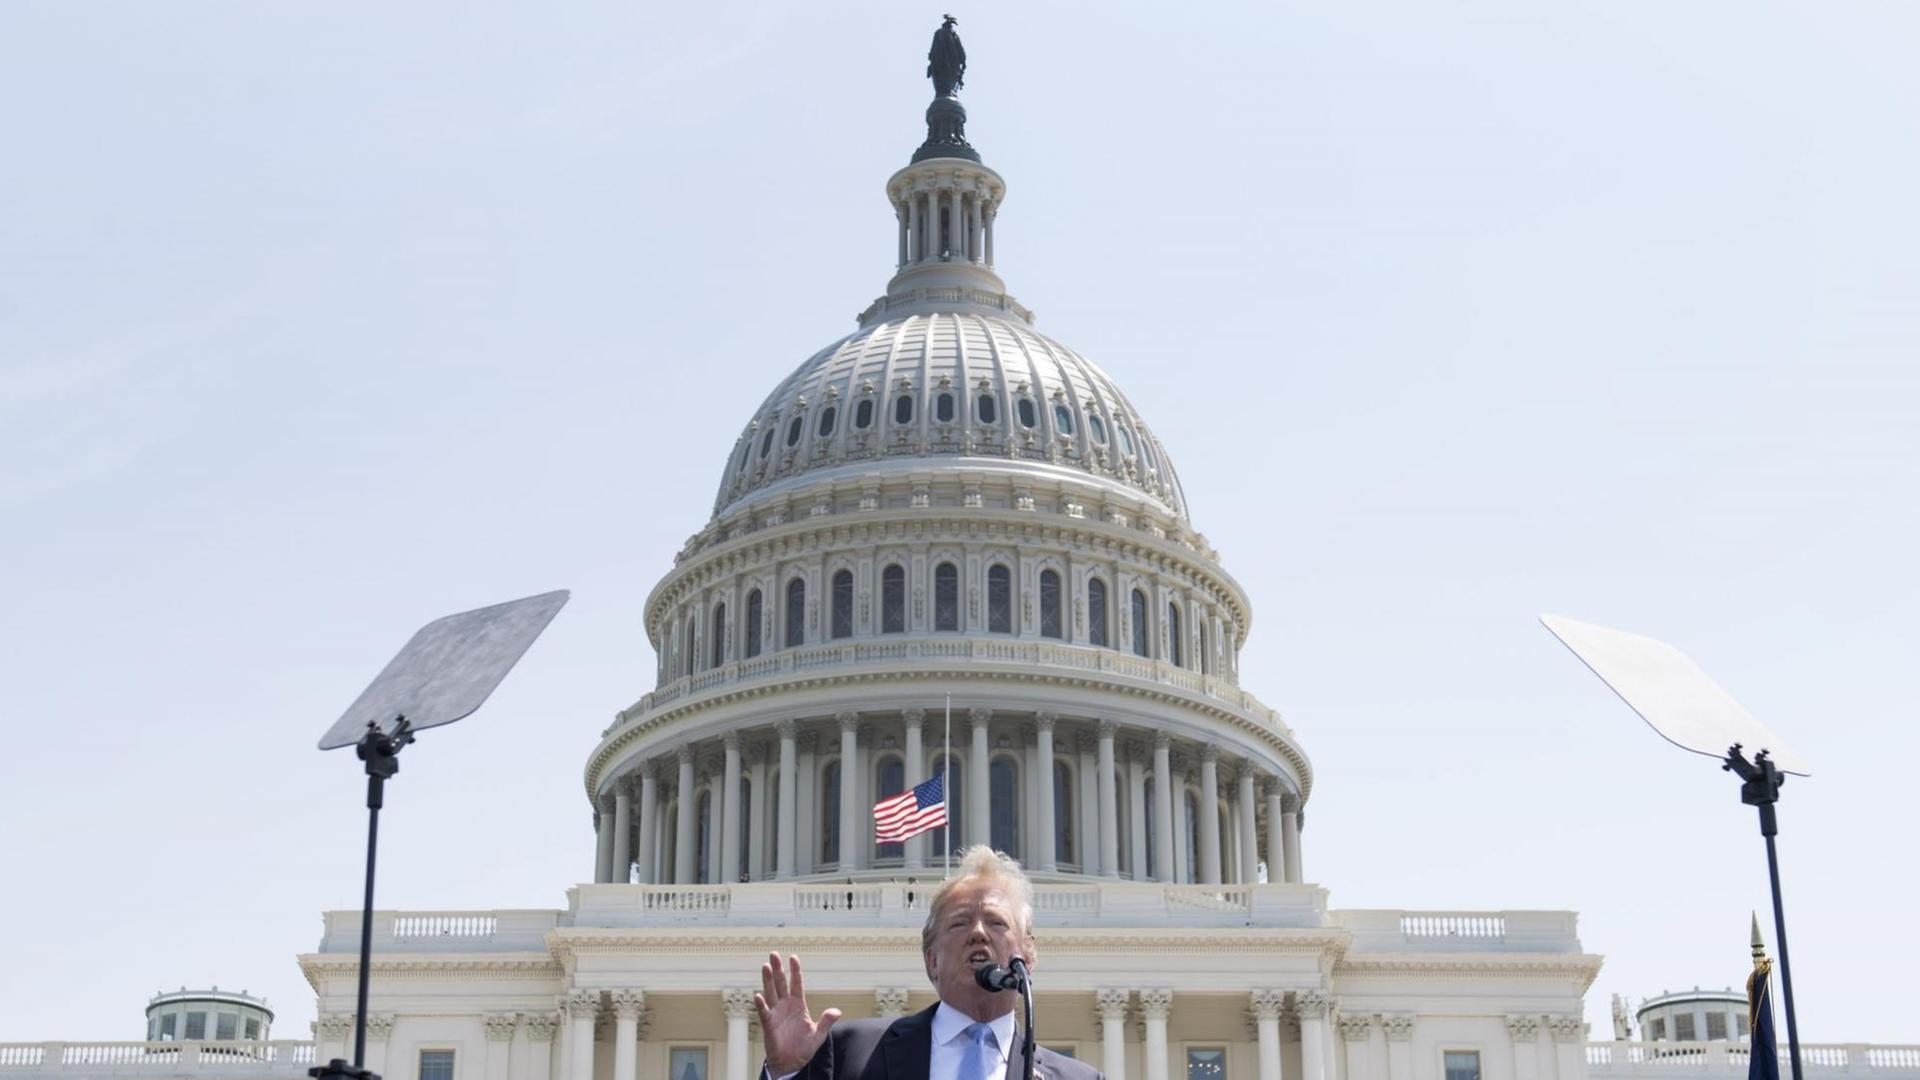 President Donald Trump während einer Rede vor dem Kapitol Gebäude anläßlich des 37th Annual National Peace Officers' Memorial Service am 15. Mai 2018